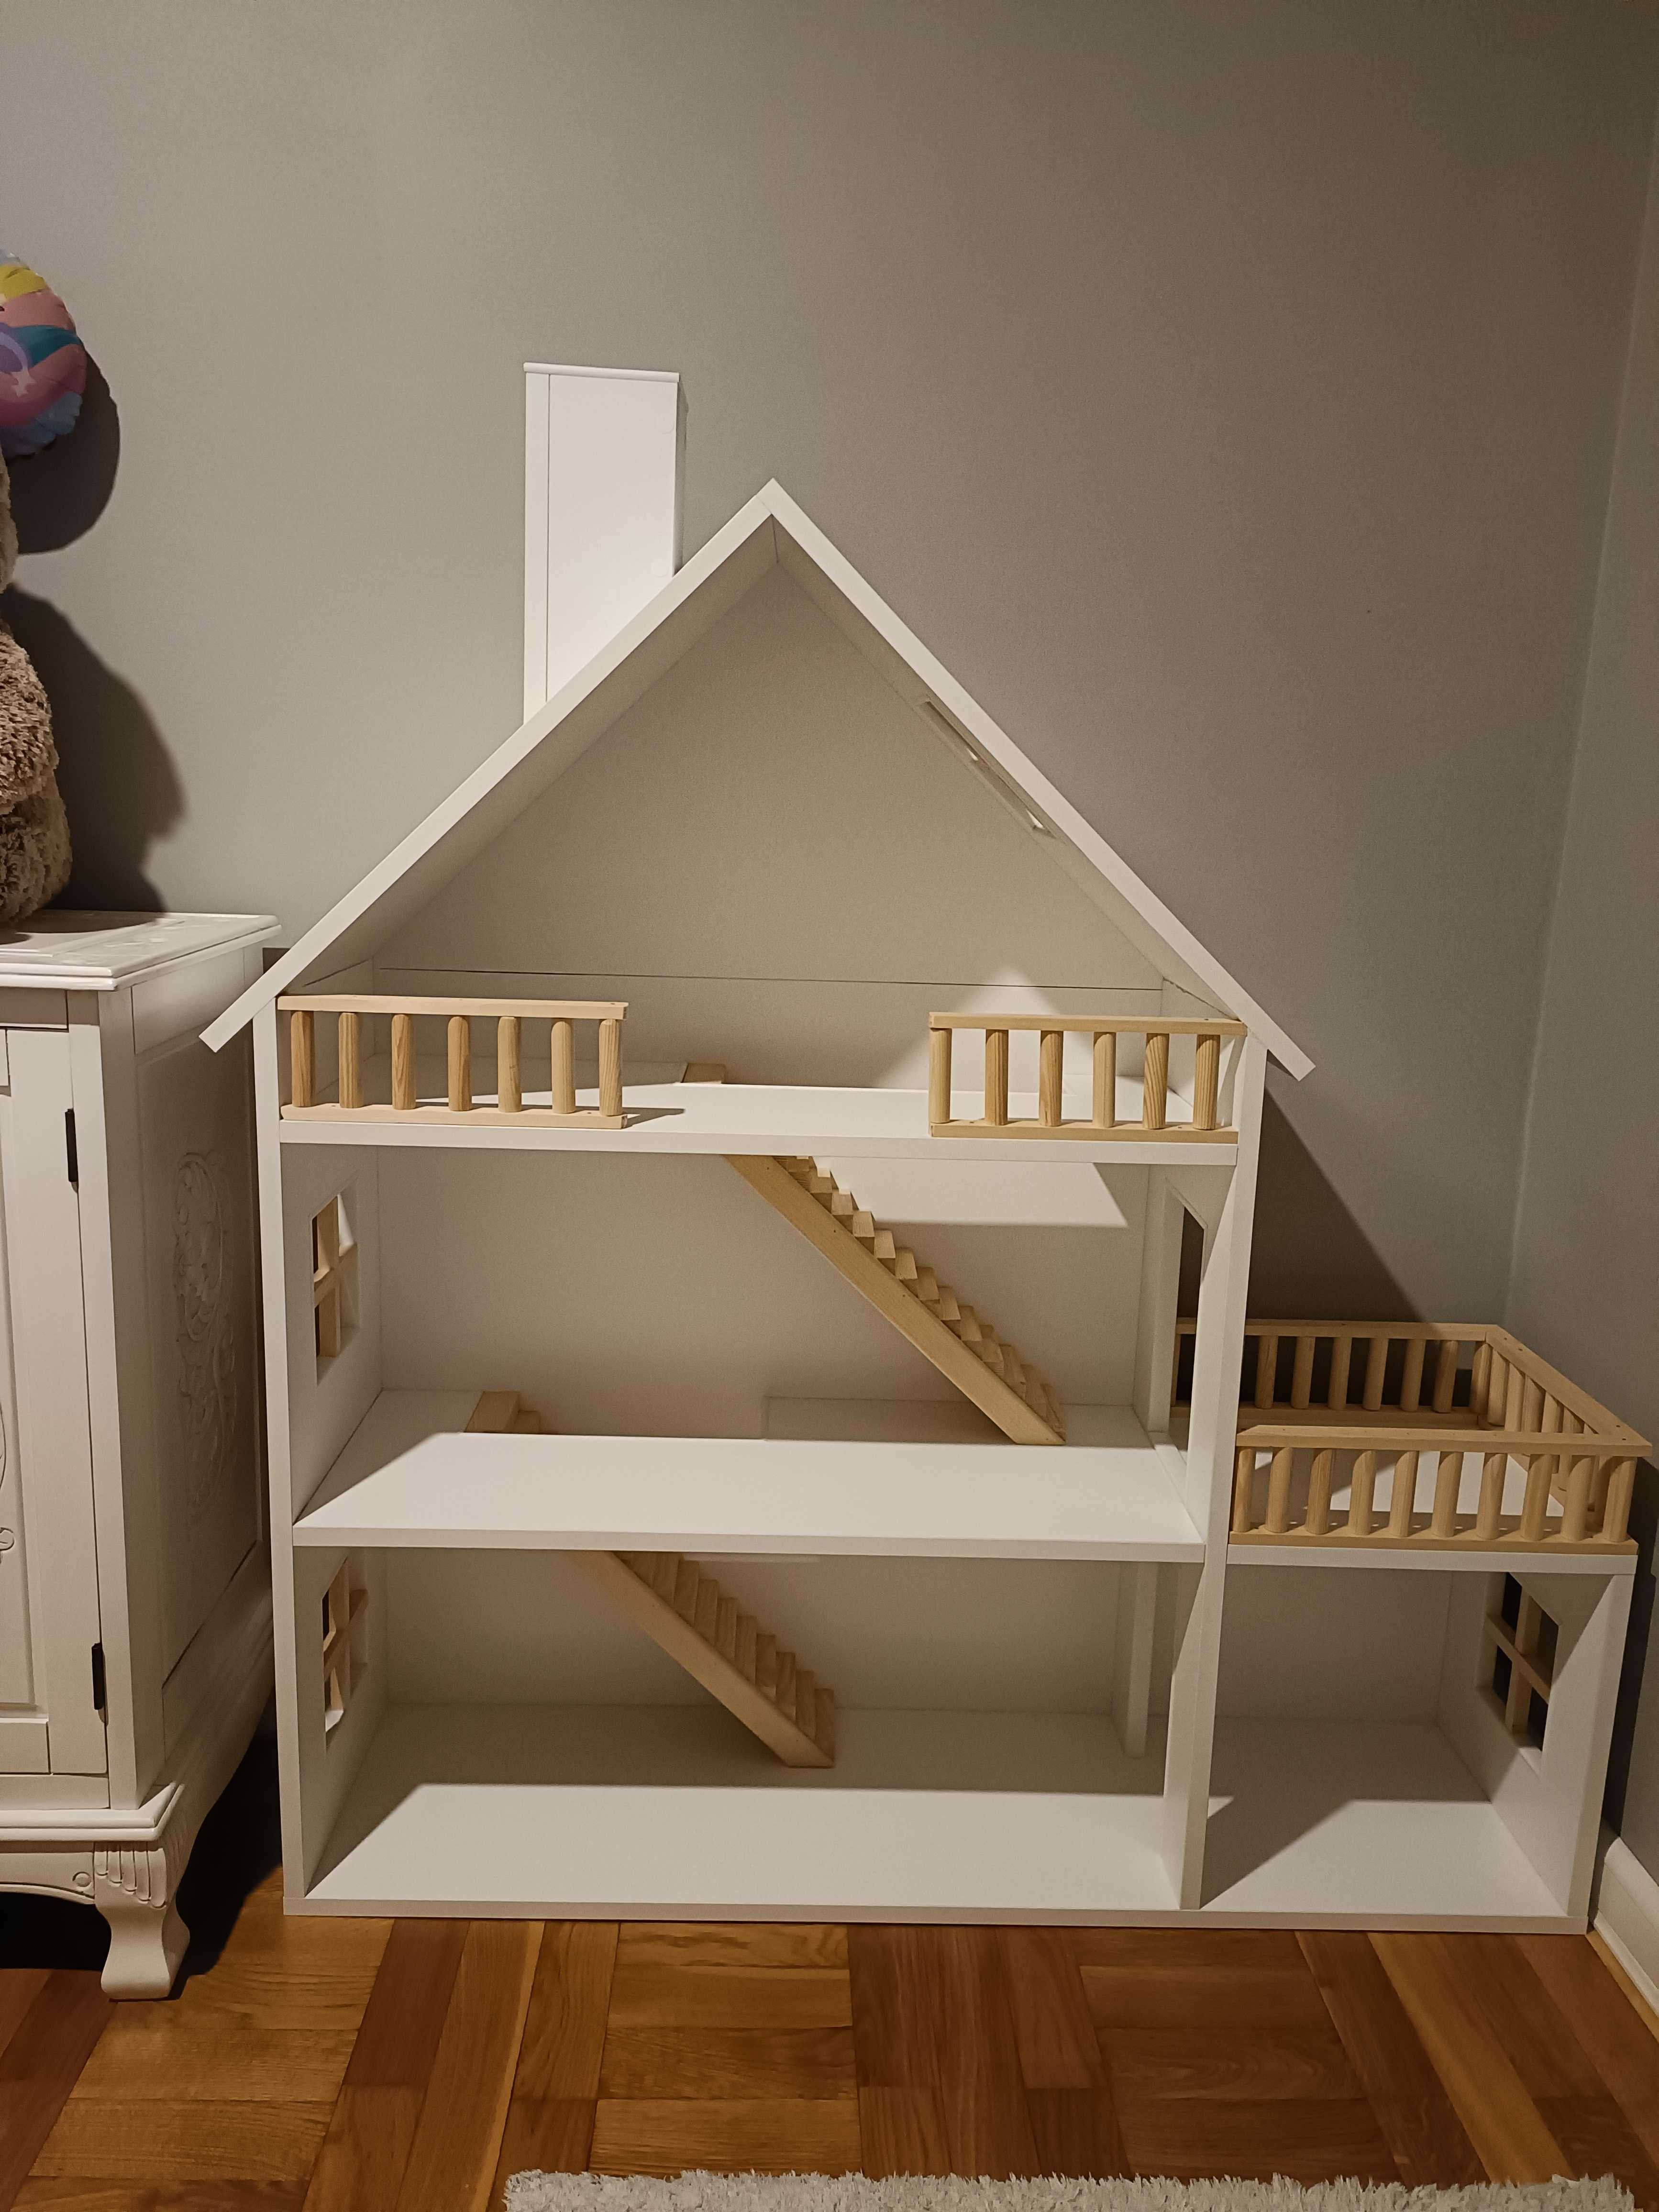 Regał typu dom domek dla lalek